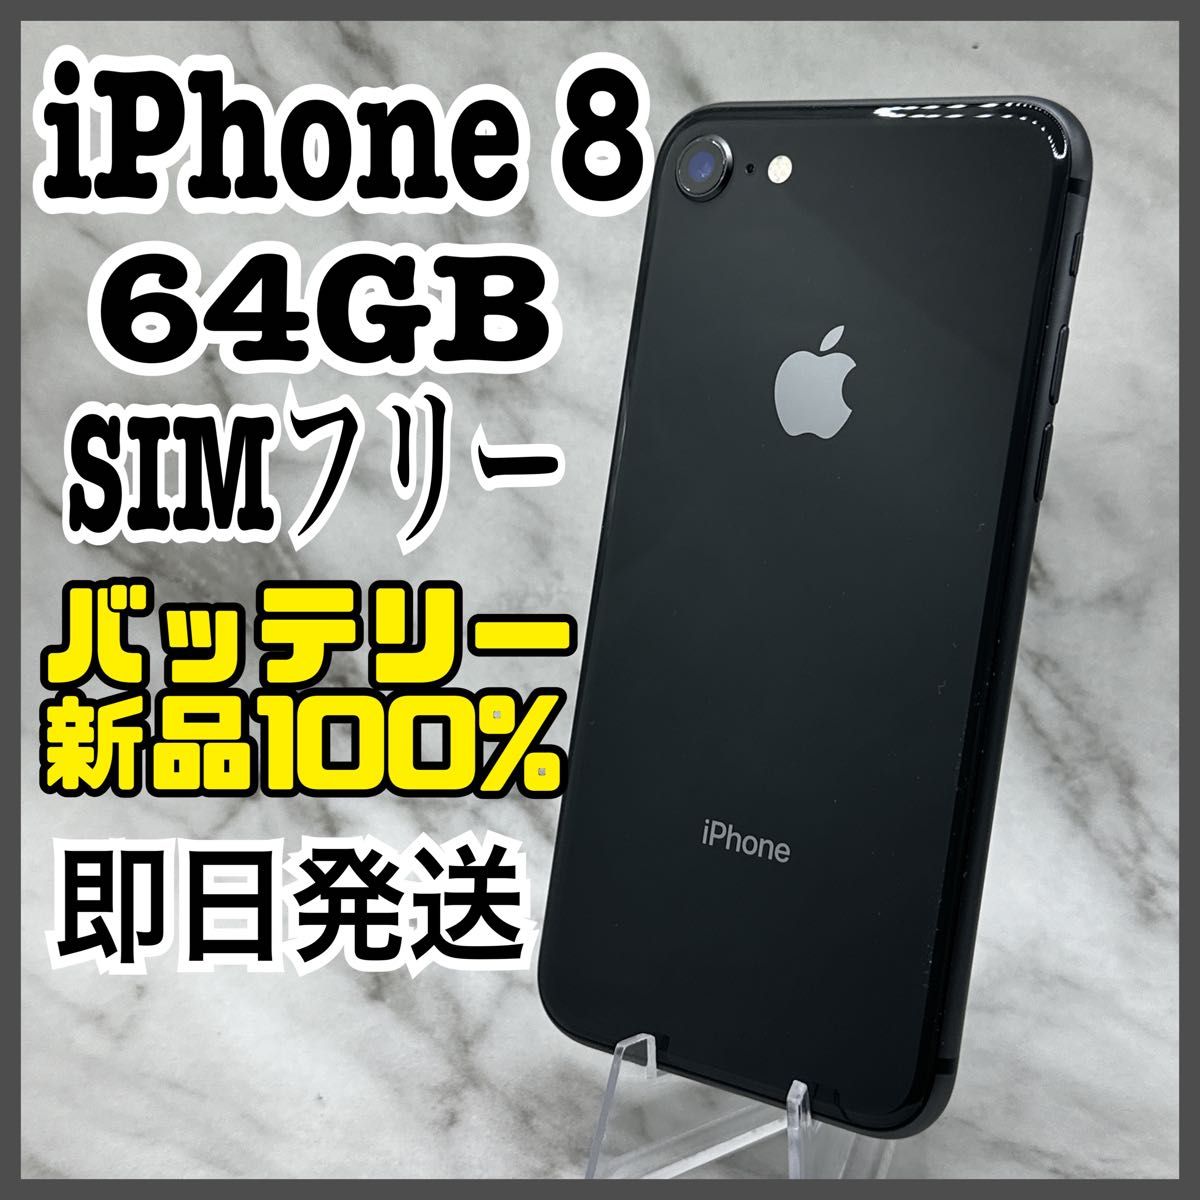 ください iPhone8 spacegray 64GB SIMフリー RnGjr-m40901591323 スマホ